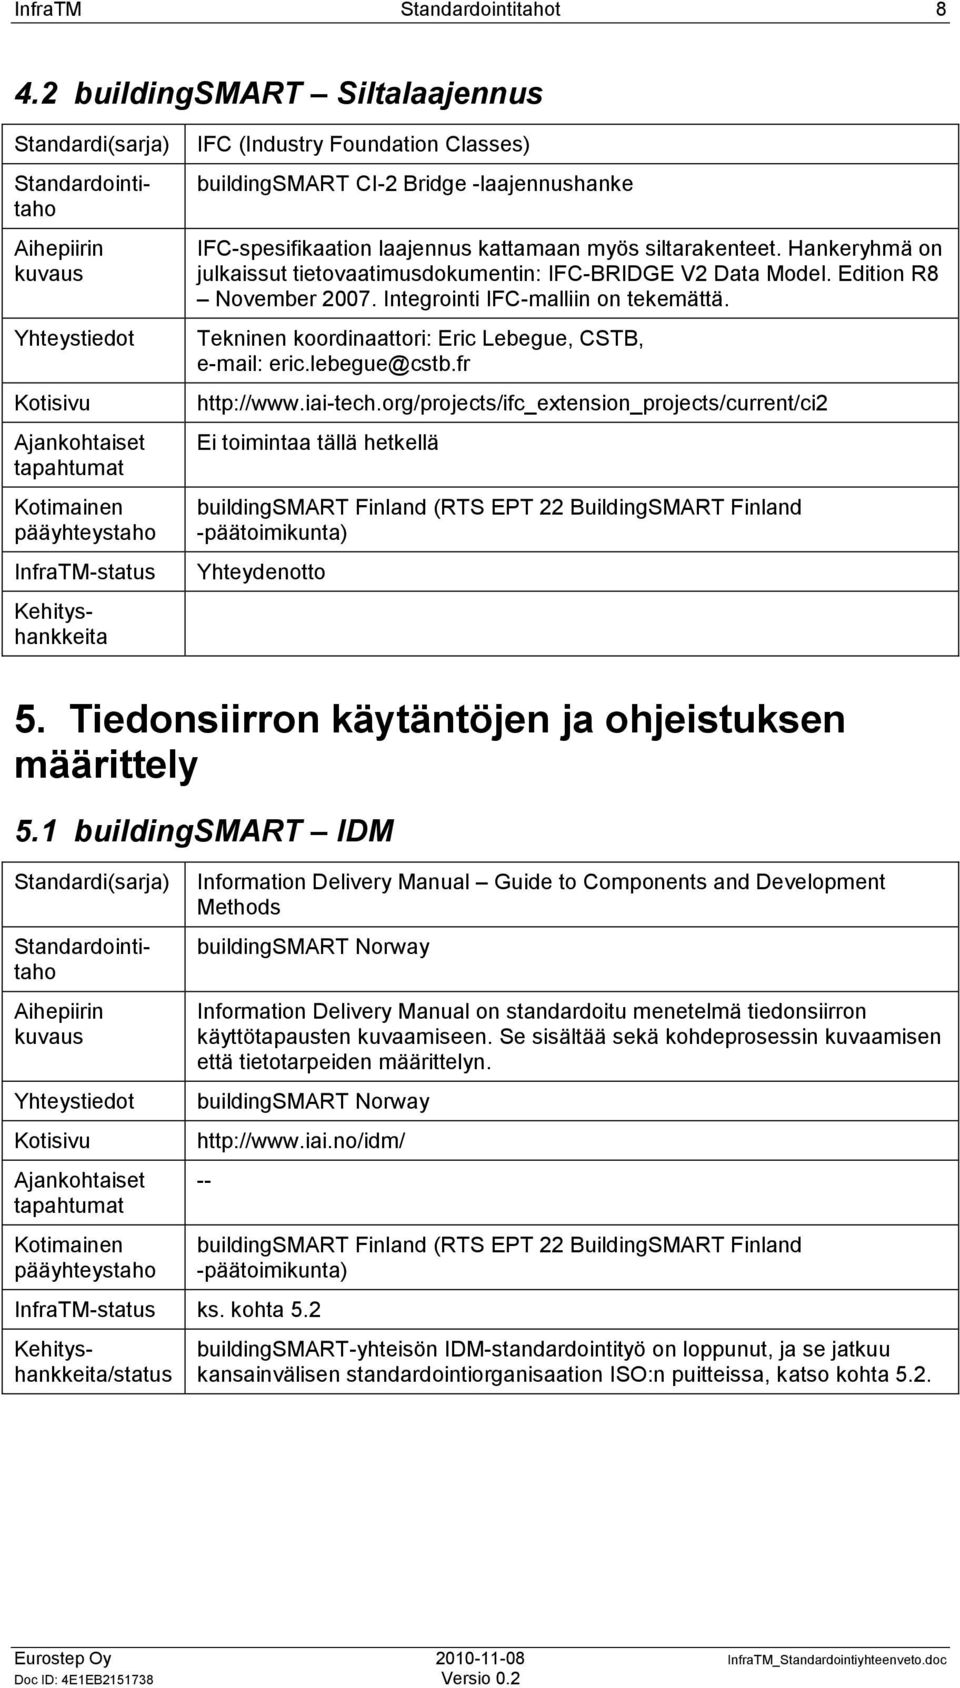 lebegue@cstb.fr http://www.iai-tech.org/projects/ifc_extension_projects/current/ci2 Ei toimintaa tällä hetkellä buildingsmart Finland (RTS EPT 22 BuildingSMART Finland -päätoimikunta) Yhteydenotto 5.